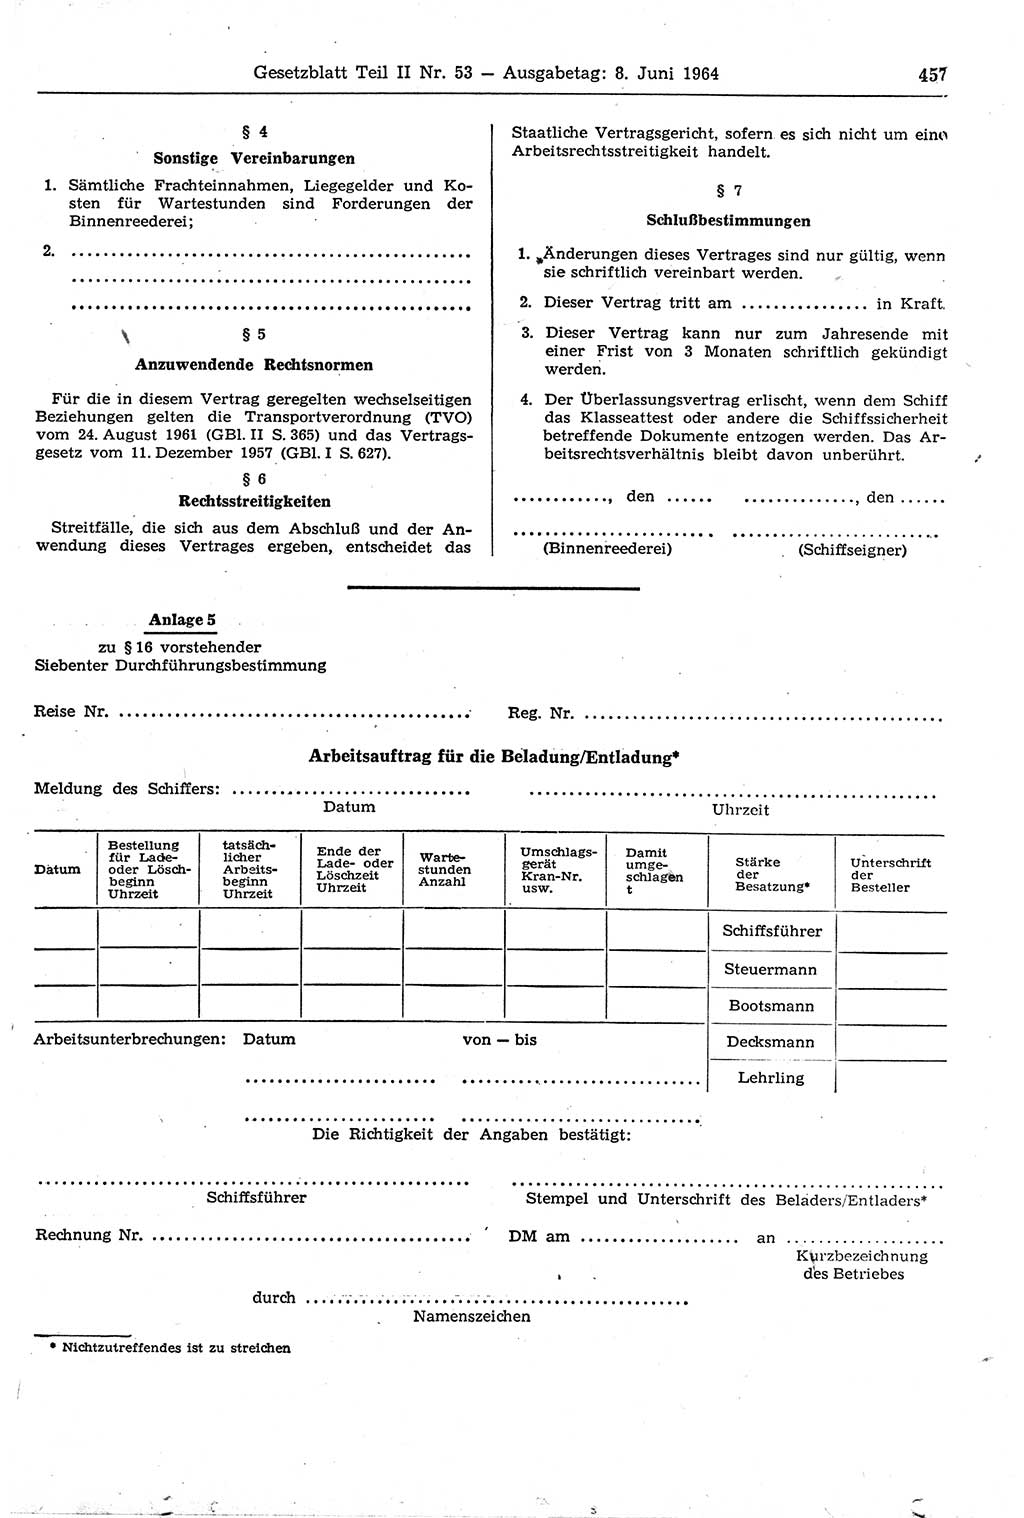 Gesetzblatt (GBl.) der Deutschen Demokratischen Republik (DDR) Teil ⅠⅠ 1964, Seite 457 (GBl. DDR ⅠⅠ 1964, S. 457)